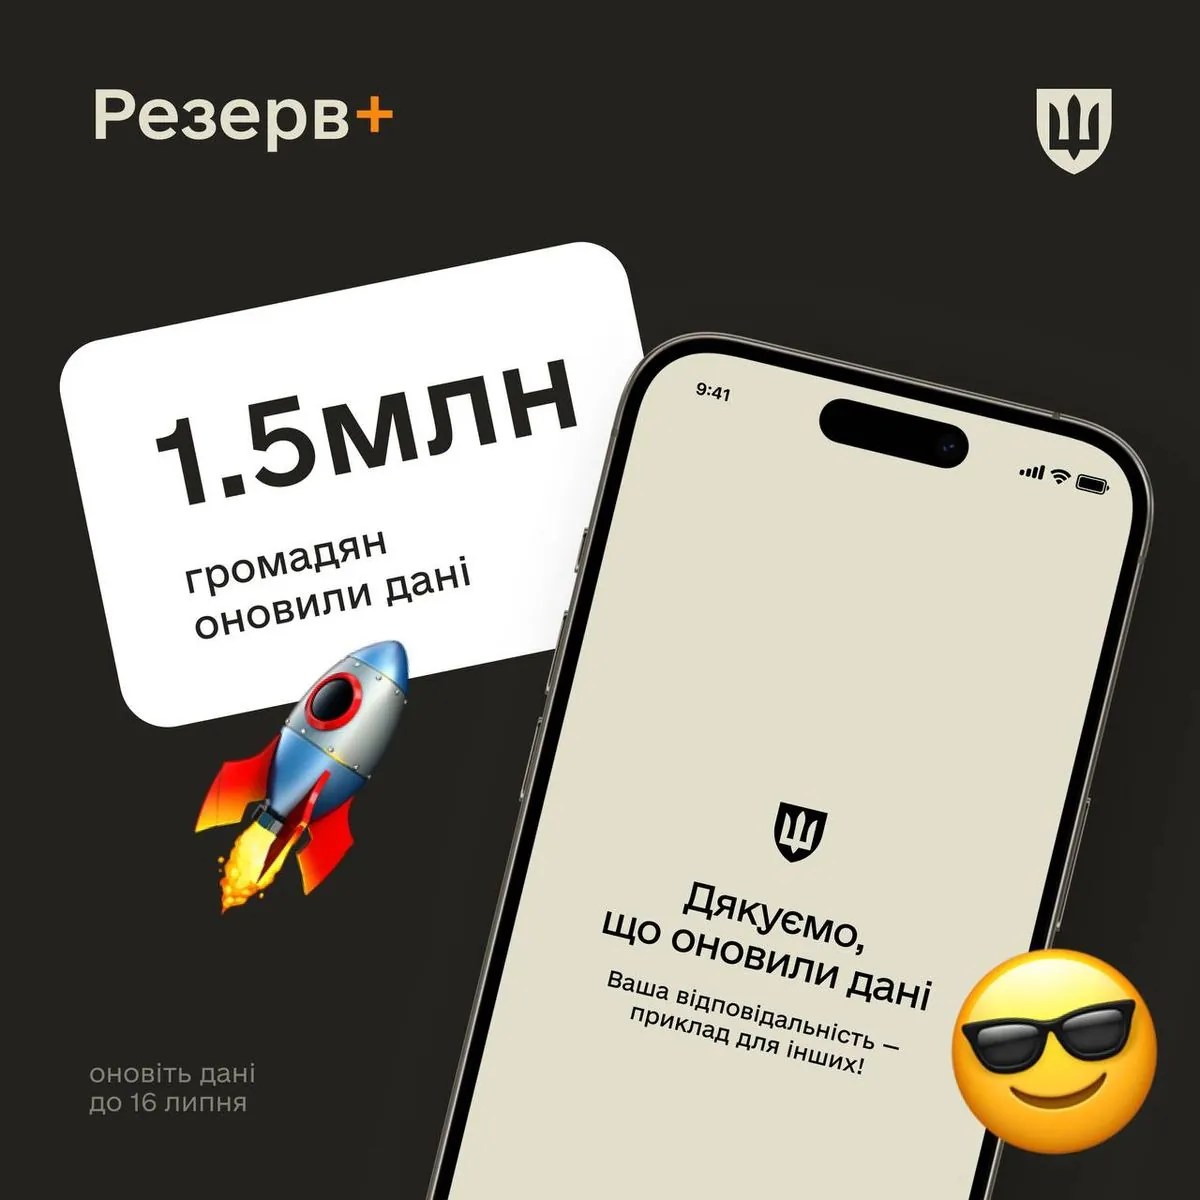 В Украине уже 1,5 миллиона граждан обновили данные через приложение "Резерв+"